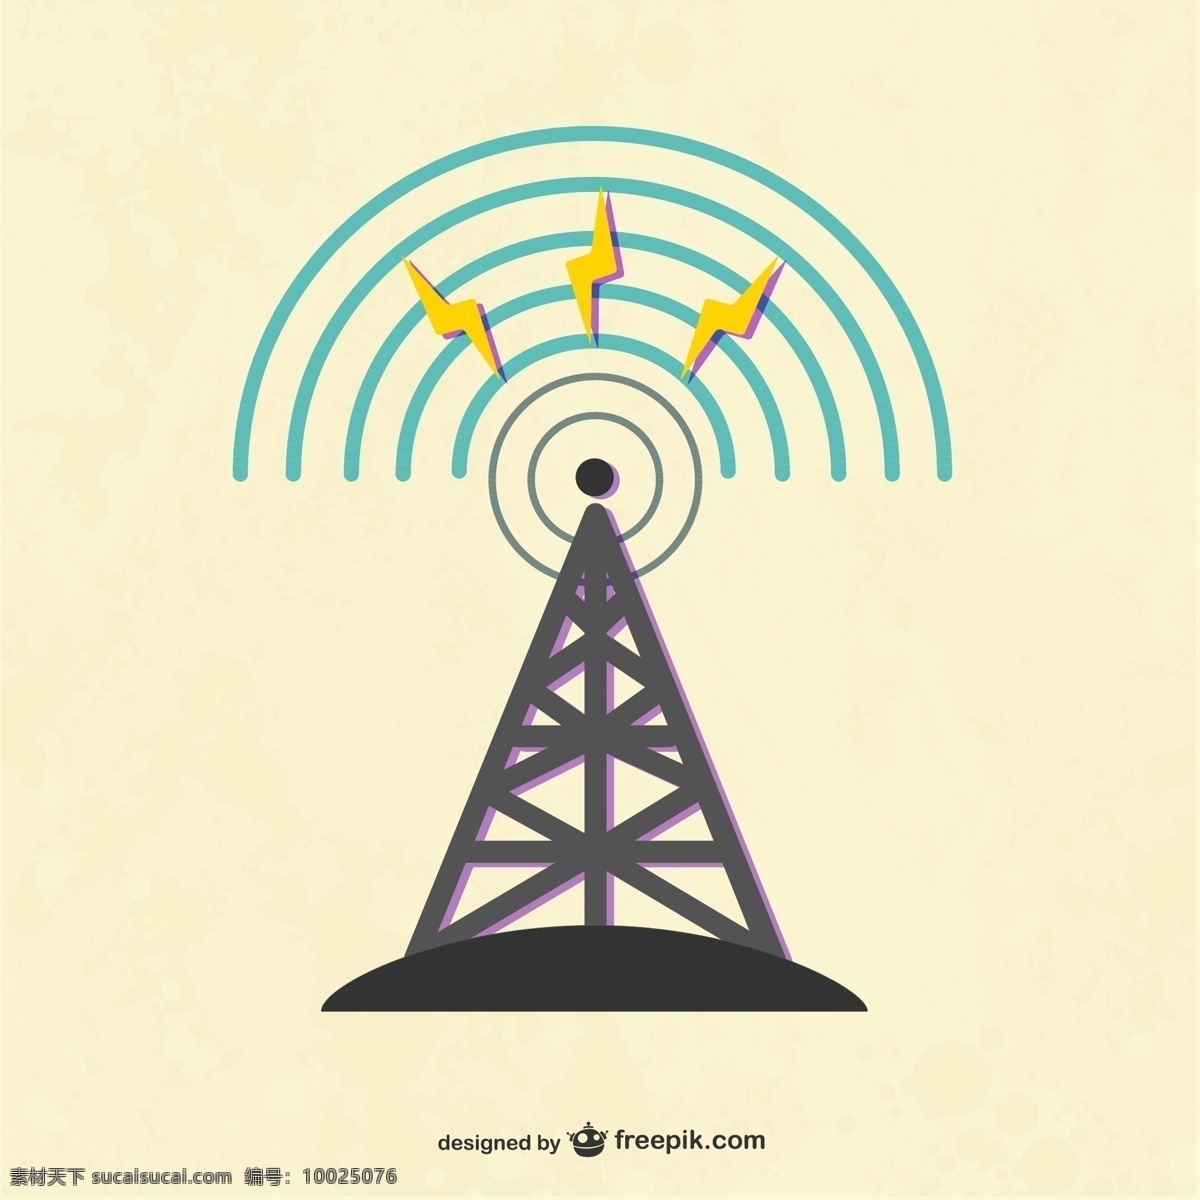 创意 无线电 塔 矢量 无线电塔设计 卡通无线 无线电塔 信号 发射器 生活百科 电脑网络